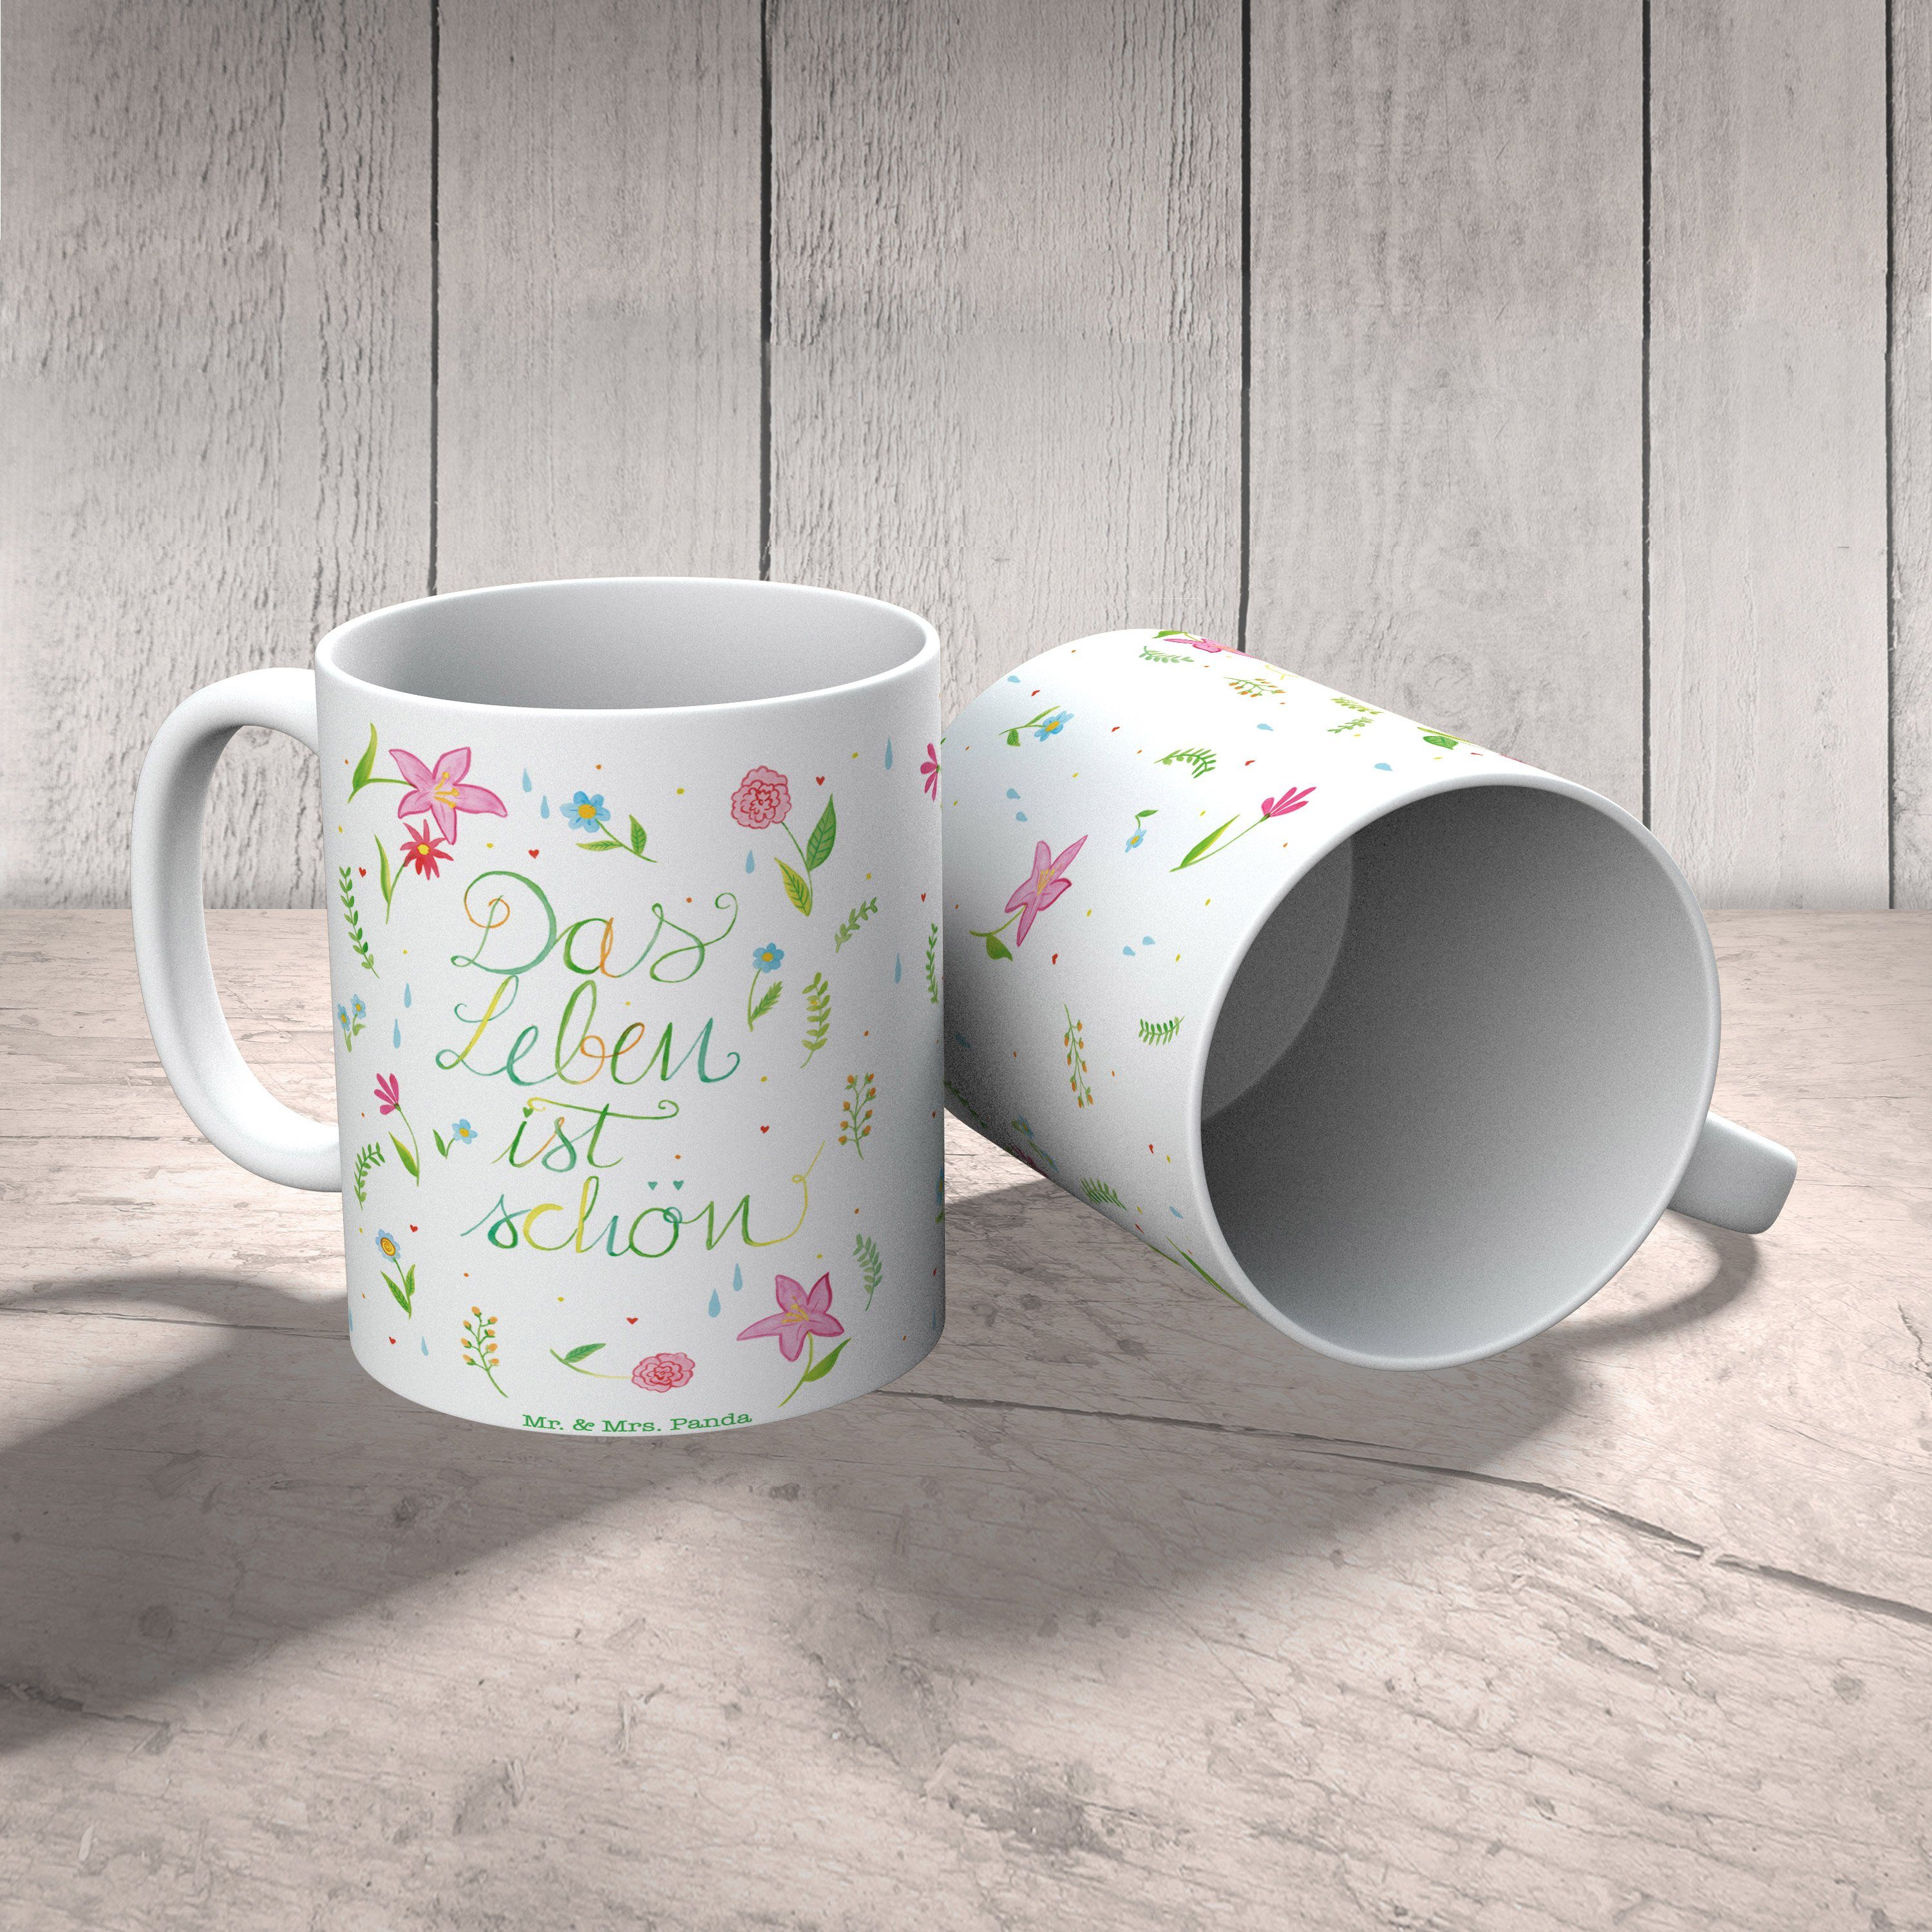 Tasse Botsc, & Mr. Panda Keramik ist positive Tasse, - Leben Geschenk, Mrs. Blumen schön Das Geschenk